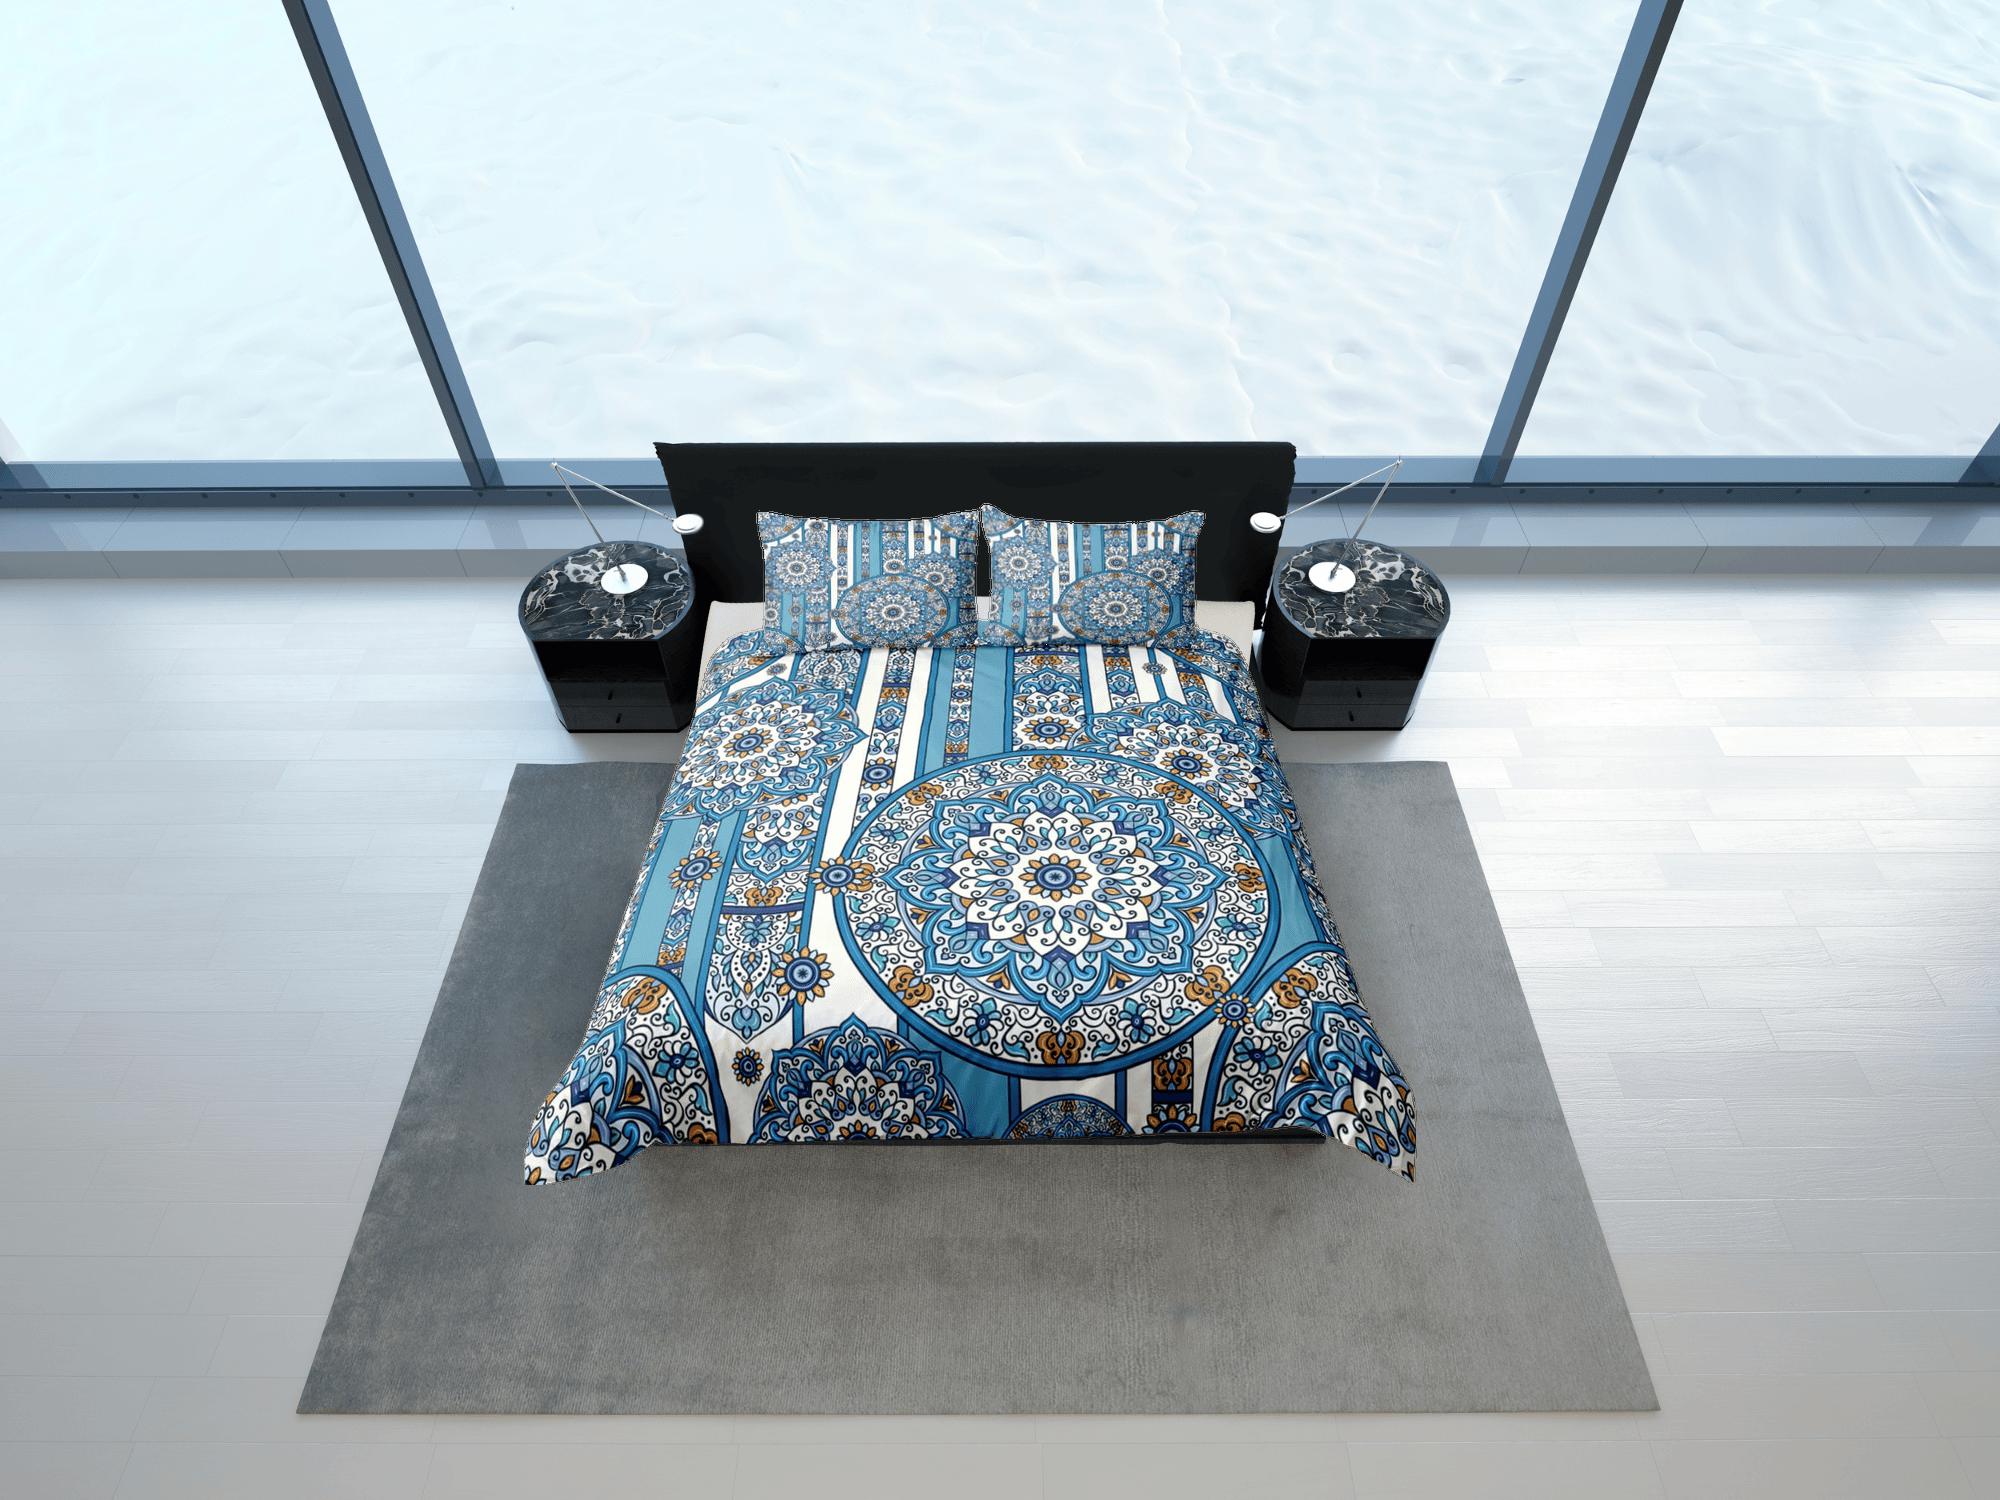 daintyduvet Blue whimsical mandala duvet cover boho bedding set full, queen, king, dorm bedding, aesthetic room decor indian bedspread maximalist decor